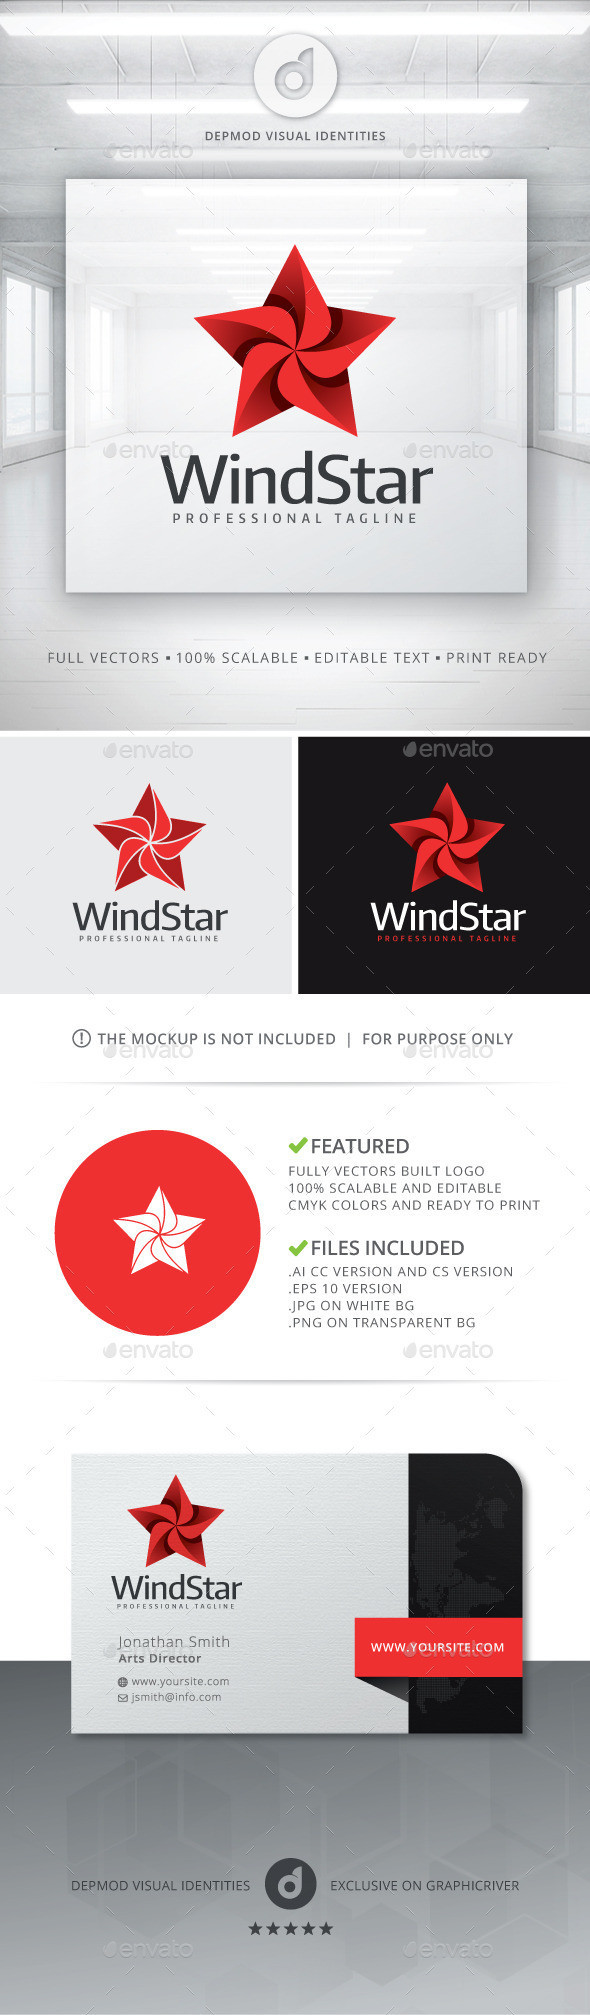 Windstar logo